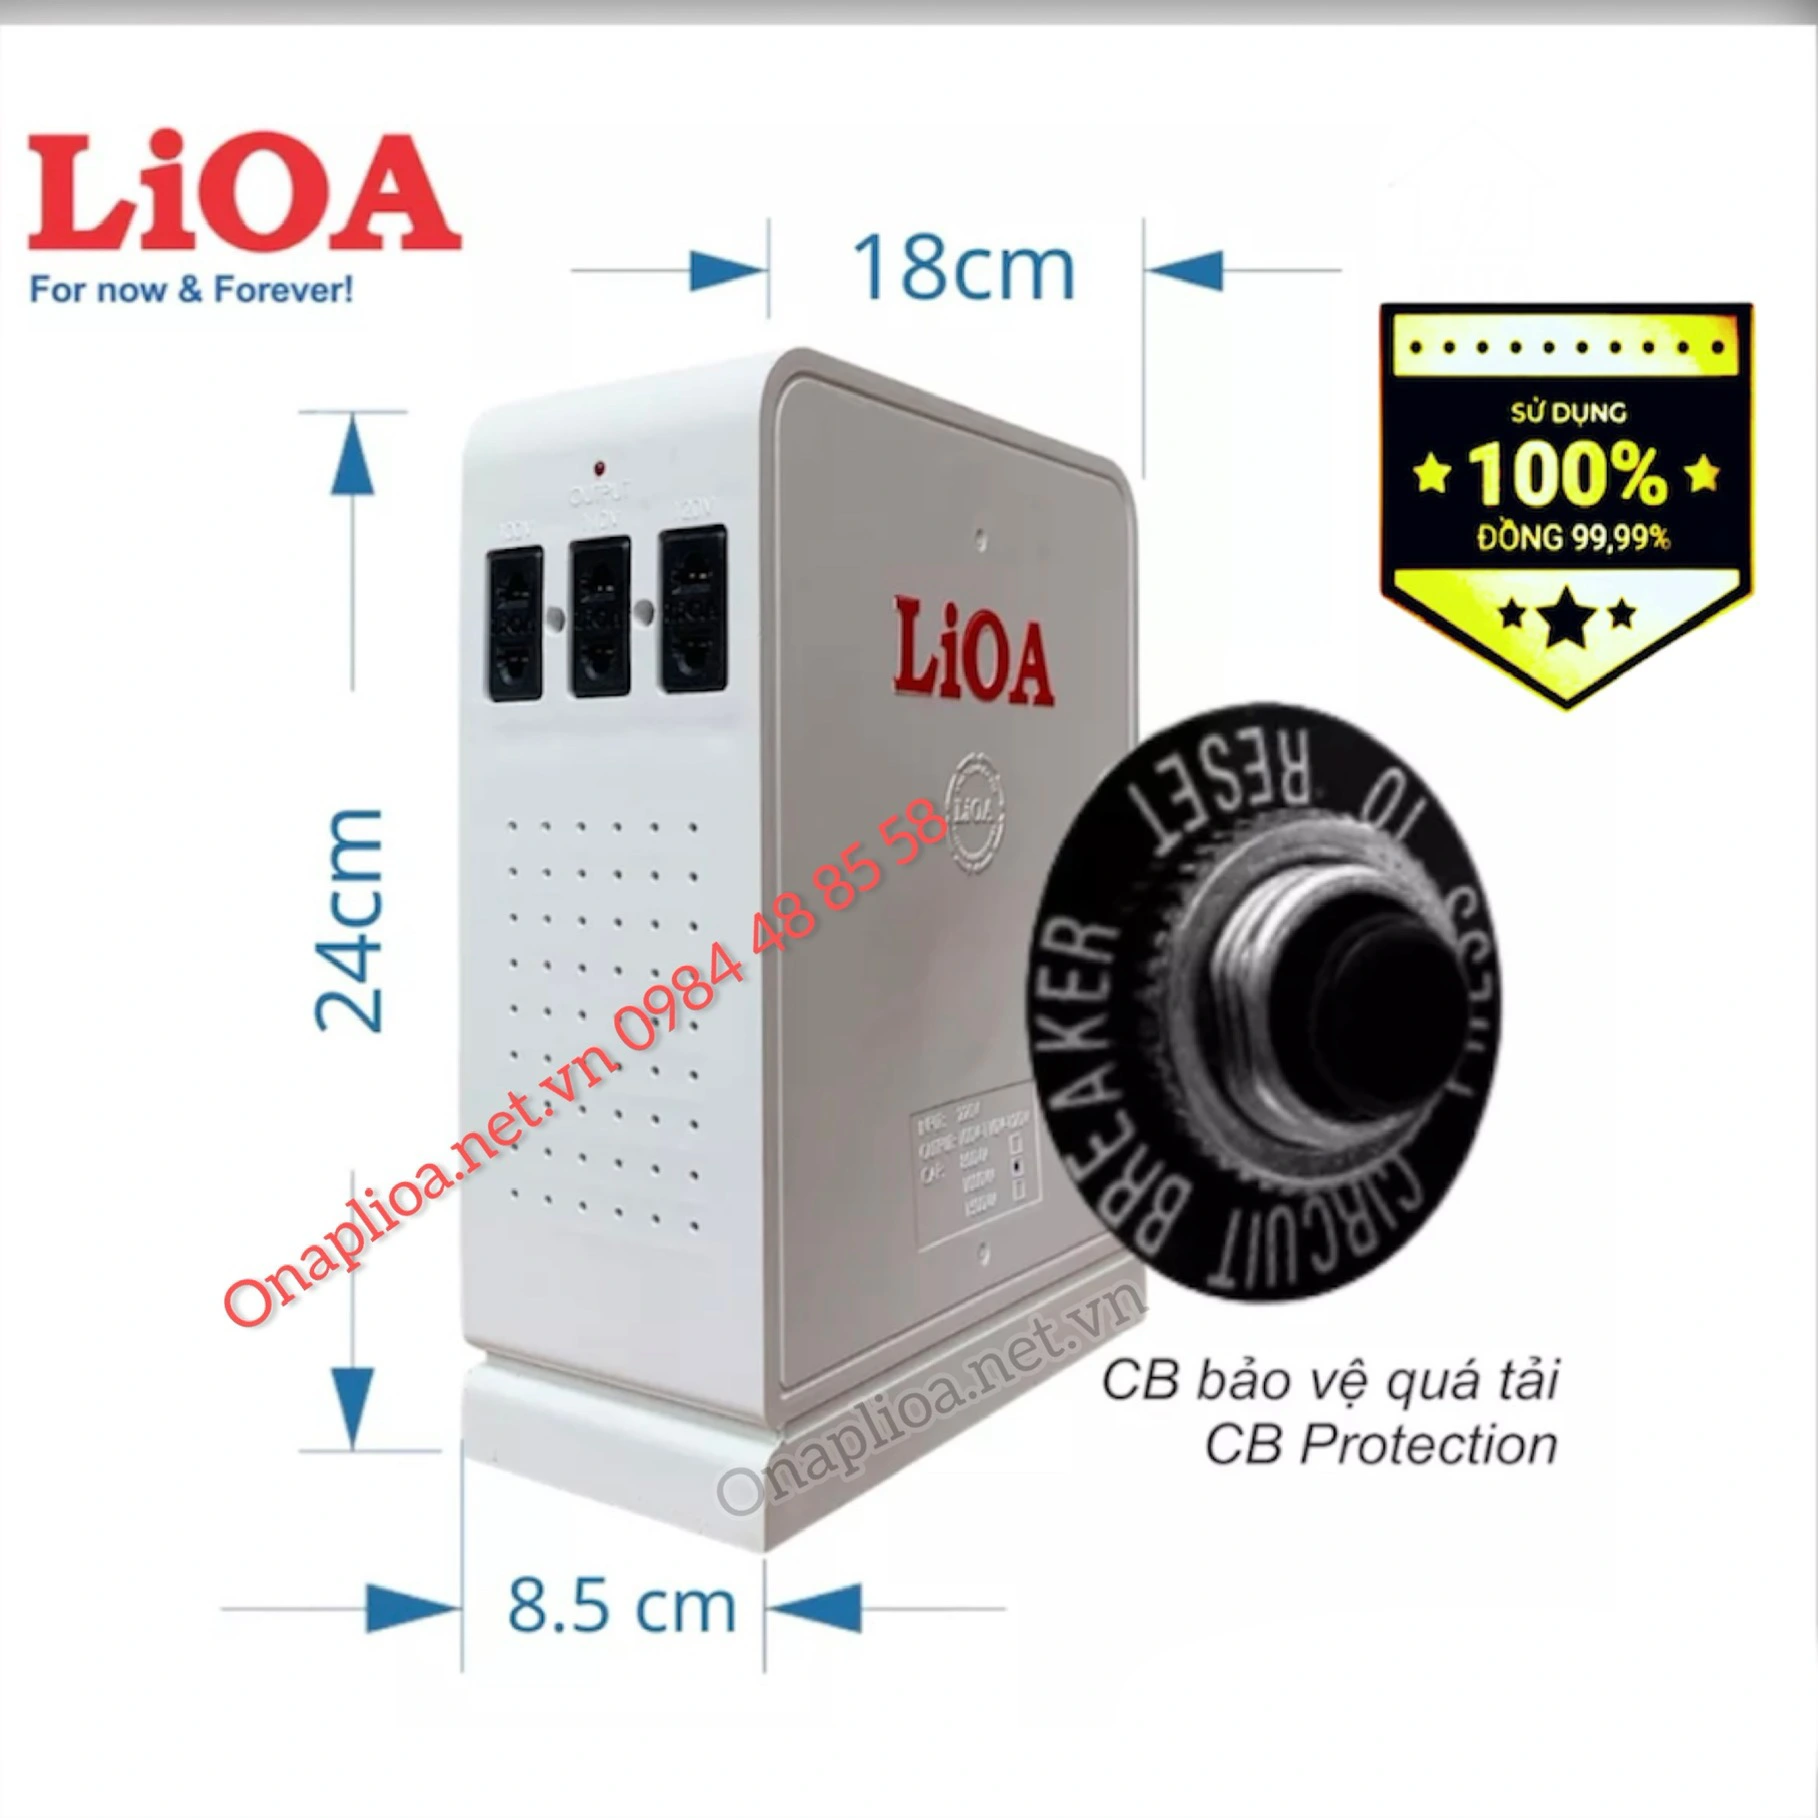 Đổi nguồn LiOA dây đồng công suất 1000VA